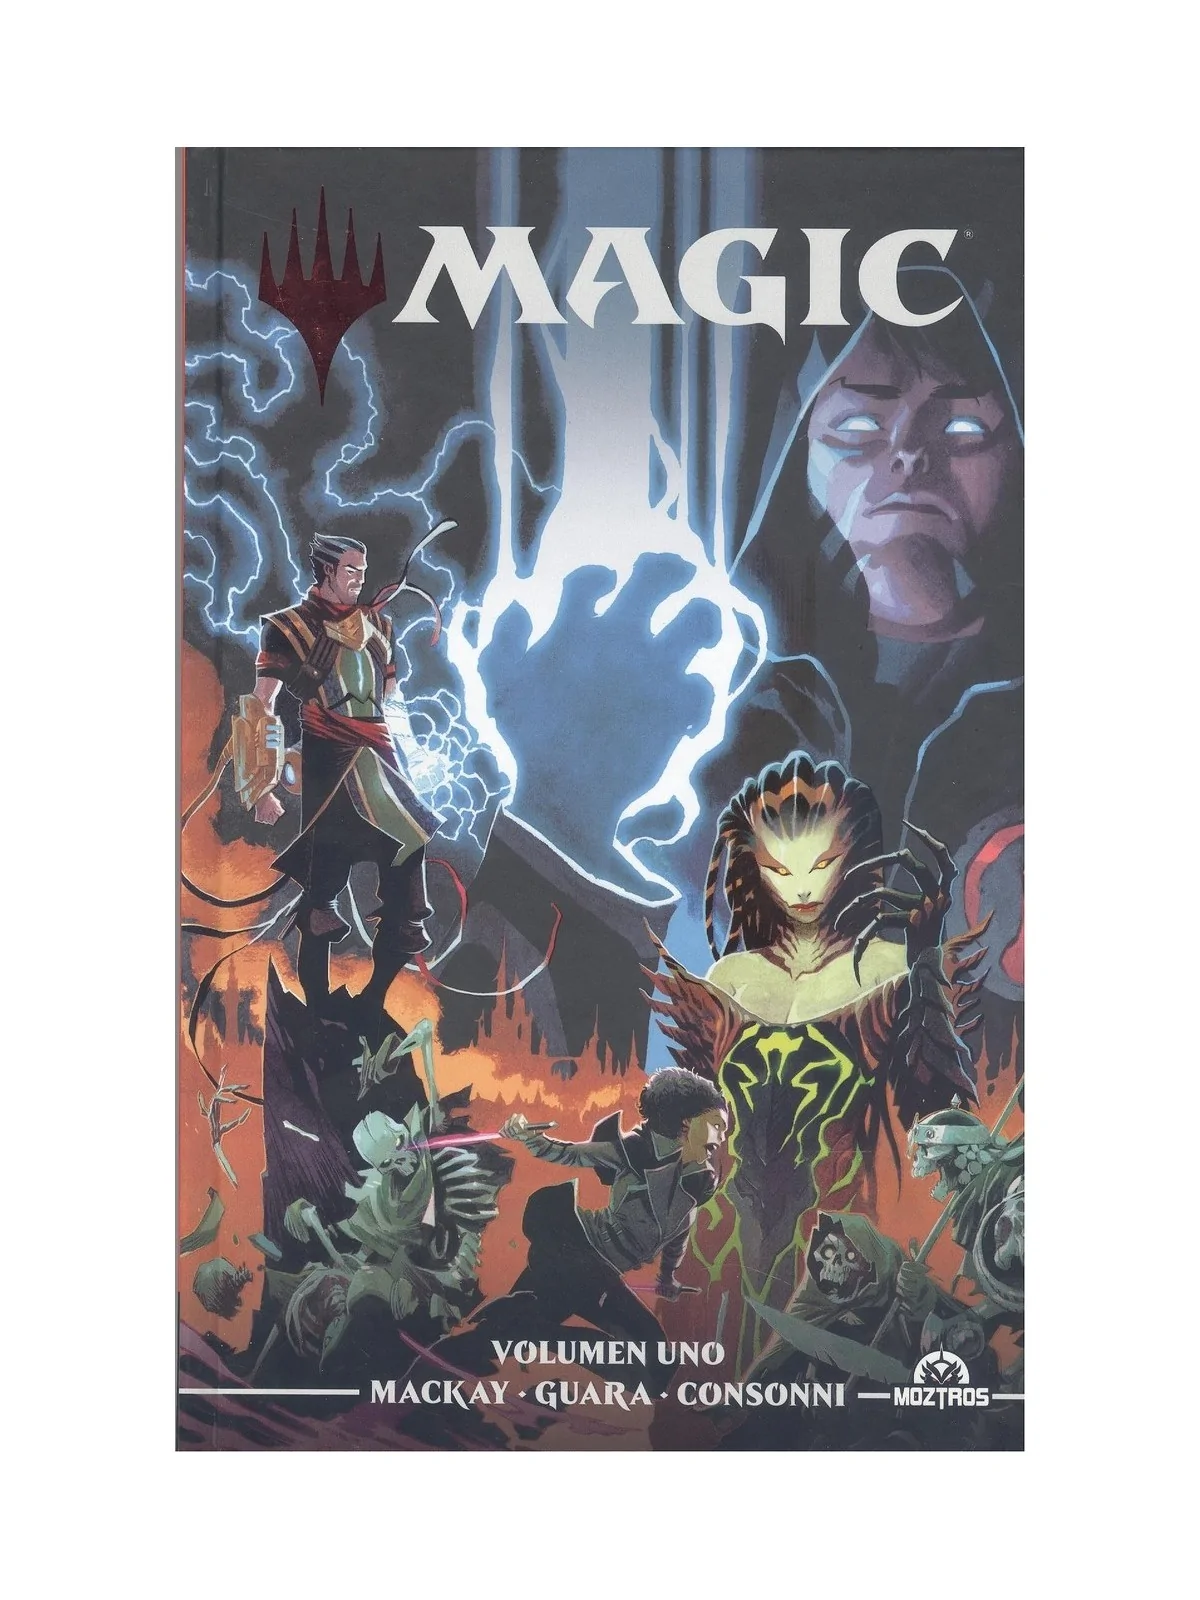 Comprar Magic the Gathering Vol.1 barato al mejor precio 17,10 € de Mo